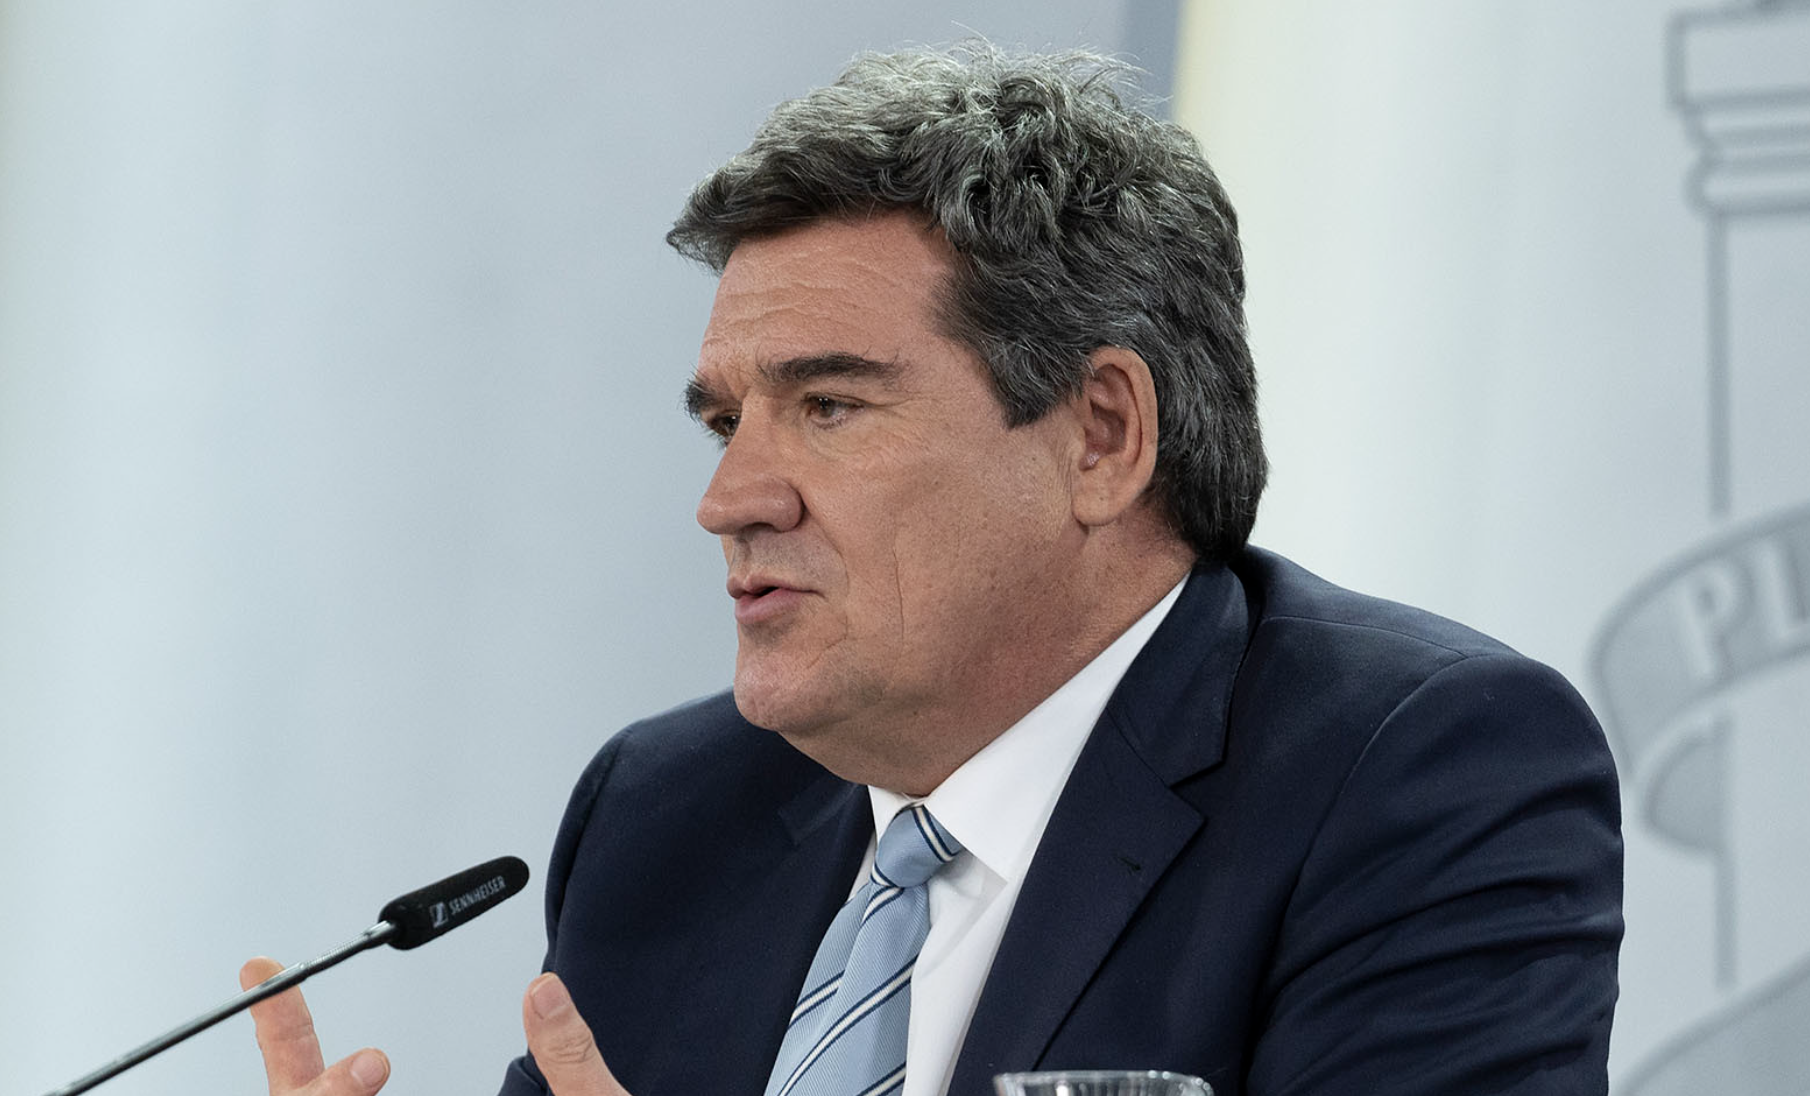 La reforma de las pensiones que ha propuesto el ministro José Luis Escrivá, en la imagen, ha sido tachada de "injusta, engañosa e insuficiente".